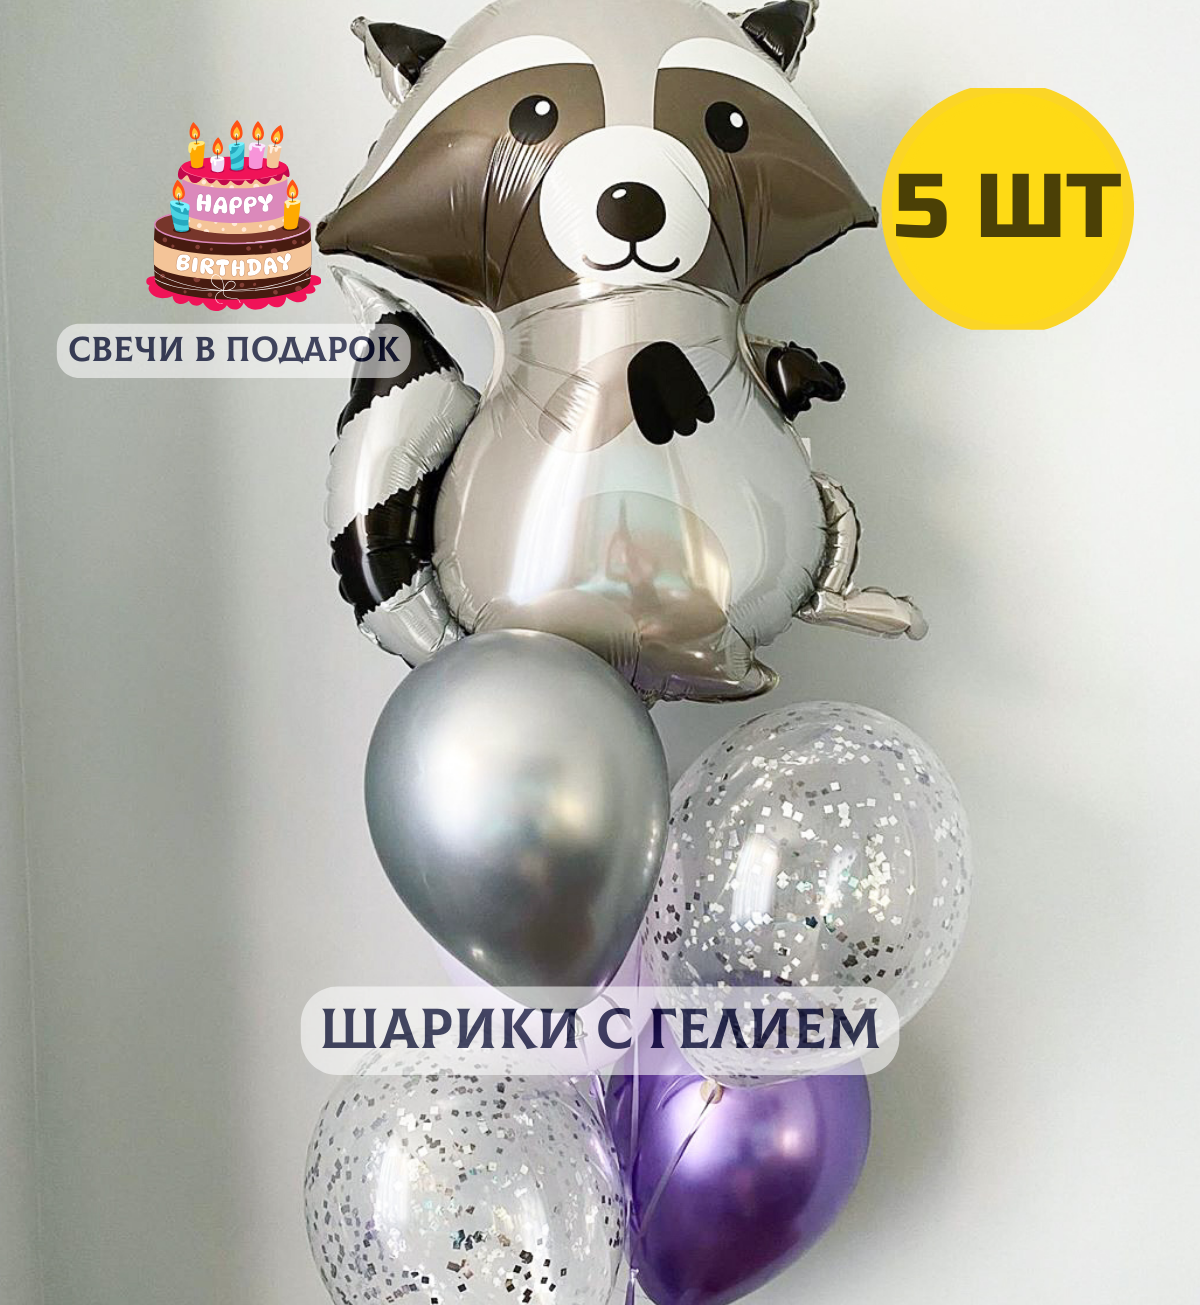 Воздушные шары с гелием (надутые) в подарок на день рождения "Енот с шариками" + свечки для торта в подарок